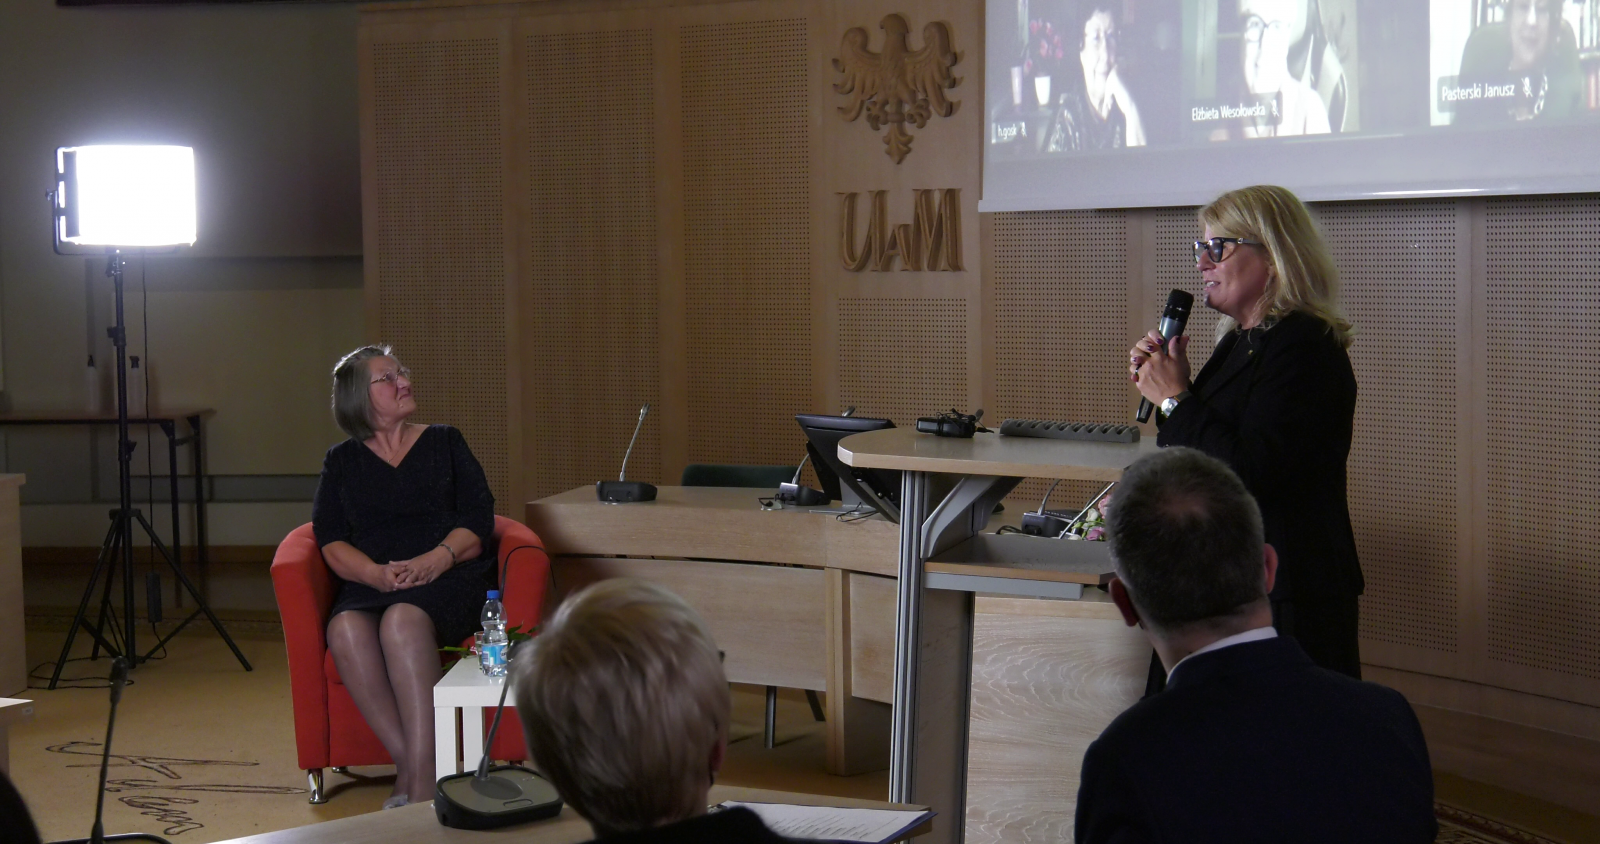 Rektor UAM prof. Bogumiła Kaniewska składa życzenia jubilatce, stojąc przy pulpicie w Salonie Mickiewicza. Na ekranie widać twarze gości uczestniczących w wydarzeniu zdalnie. Jubilatka siedzi w czerwonym fotelu, patrzy na ekran.